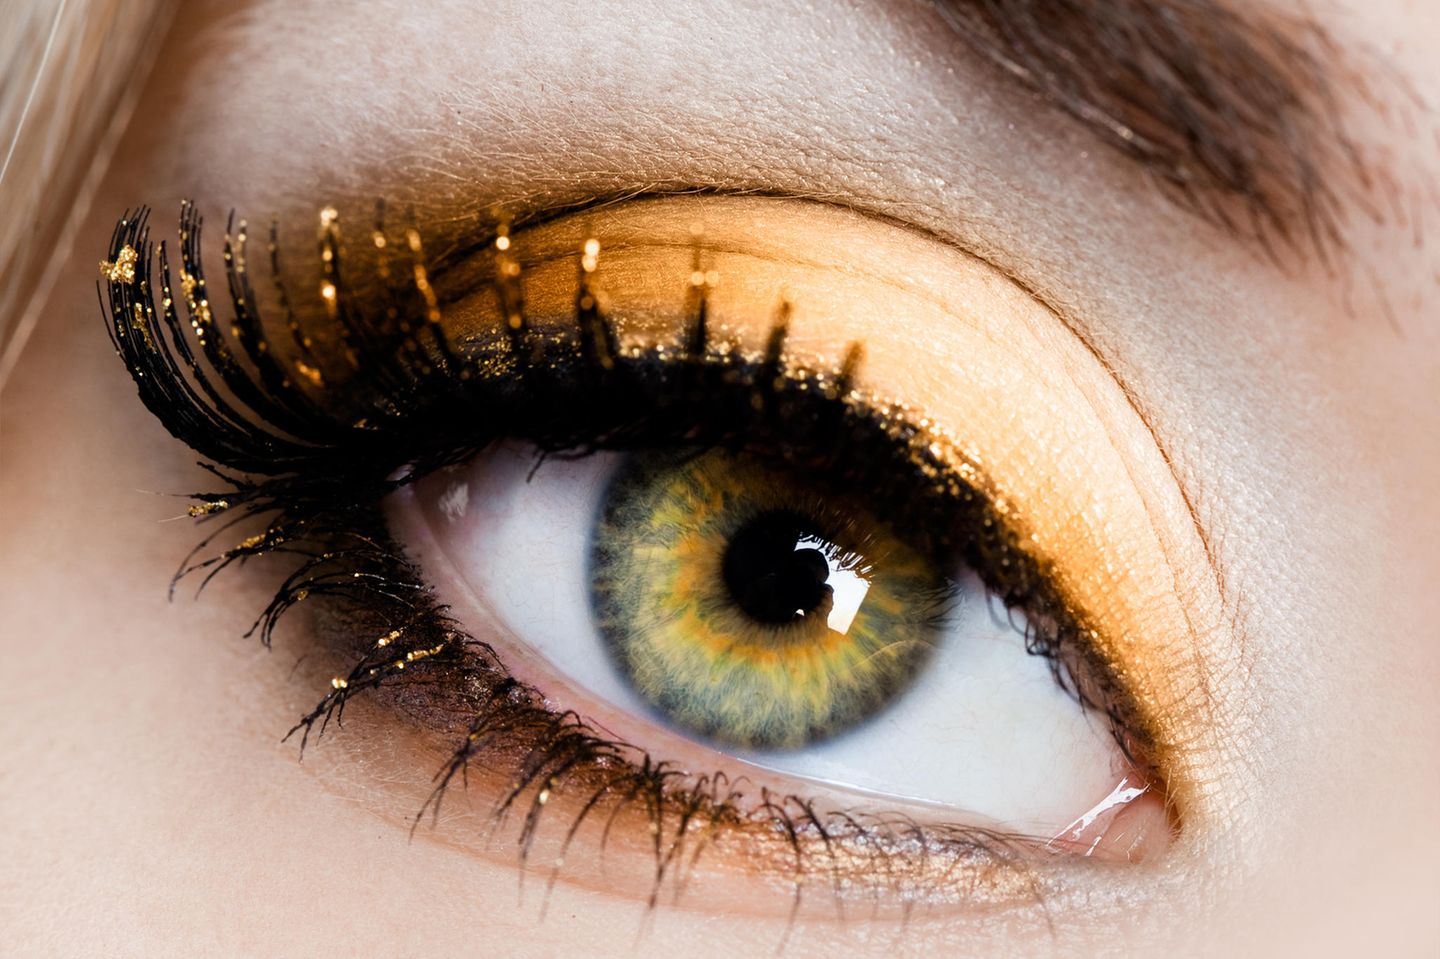 Grüne Augen schminken - die besten Tipps | BRIGITTE.de